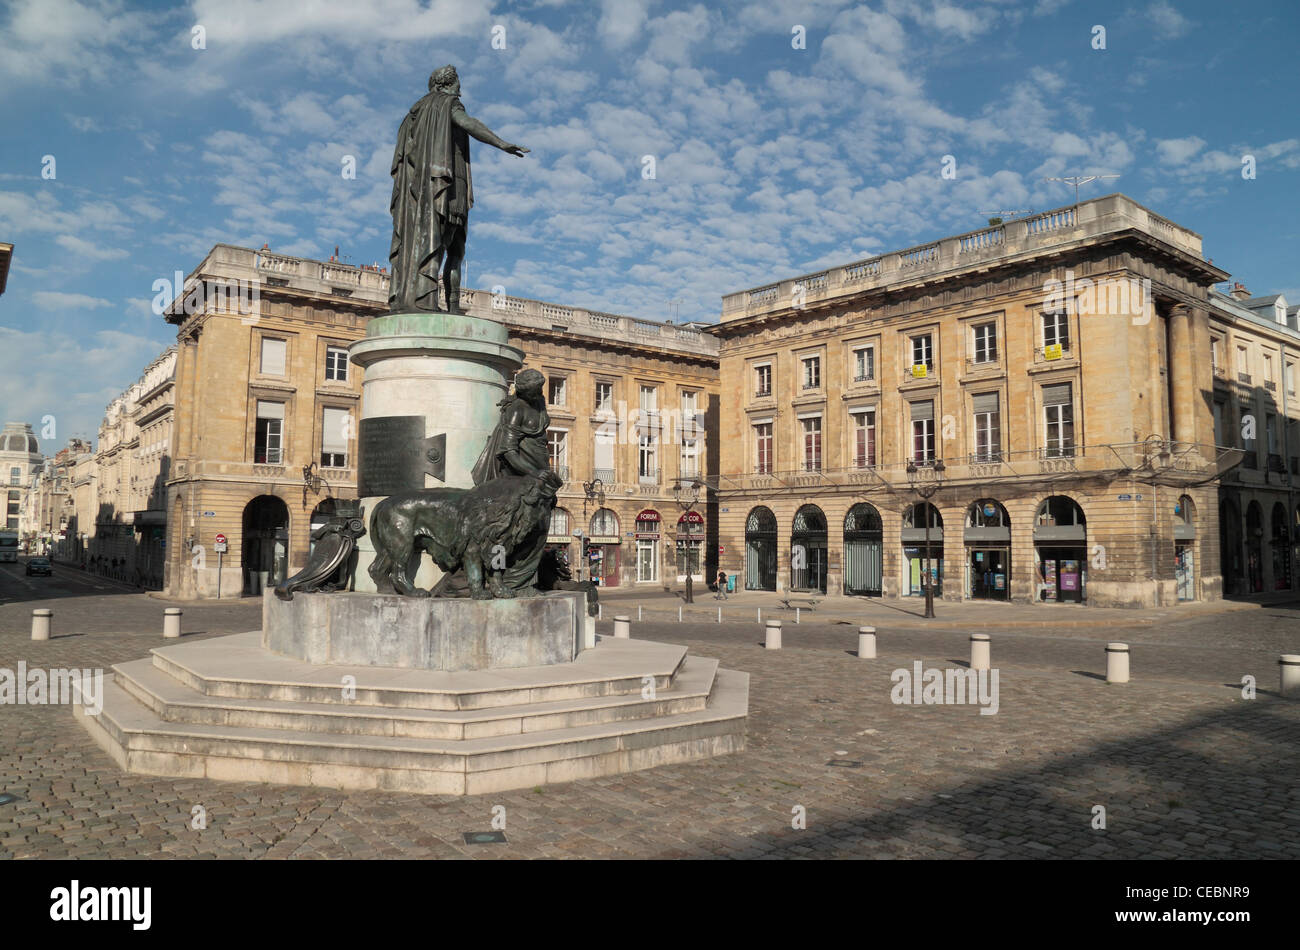 Statue de Louis XV, Place Royale, Reims, Champagne-Ardenne, France. Banque D'Images